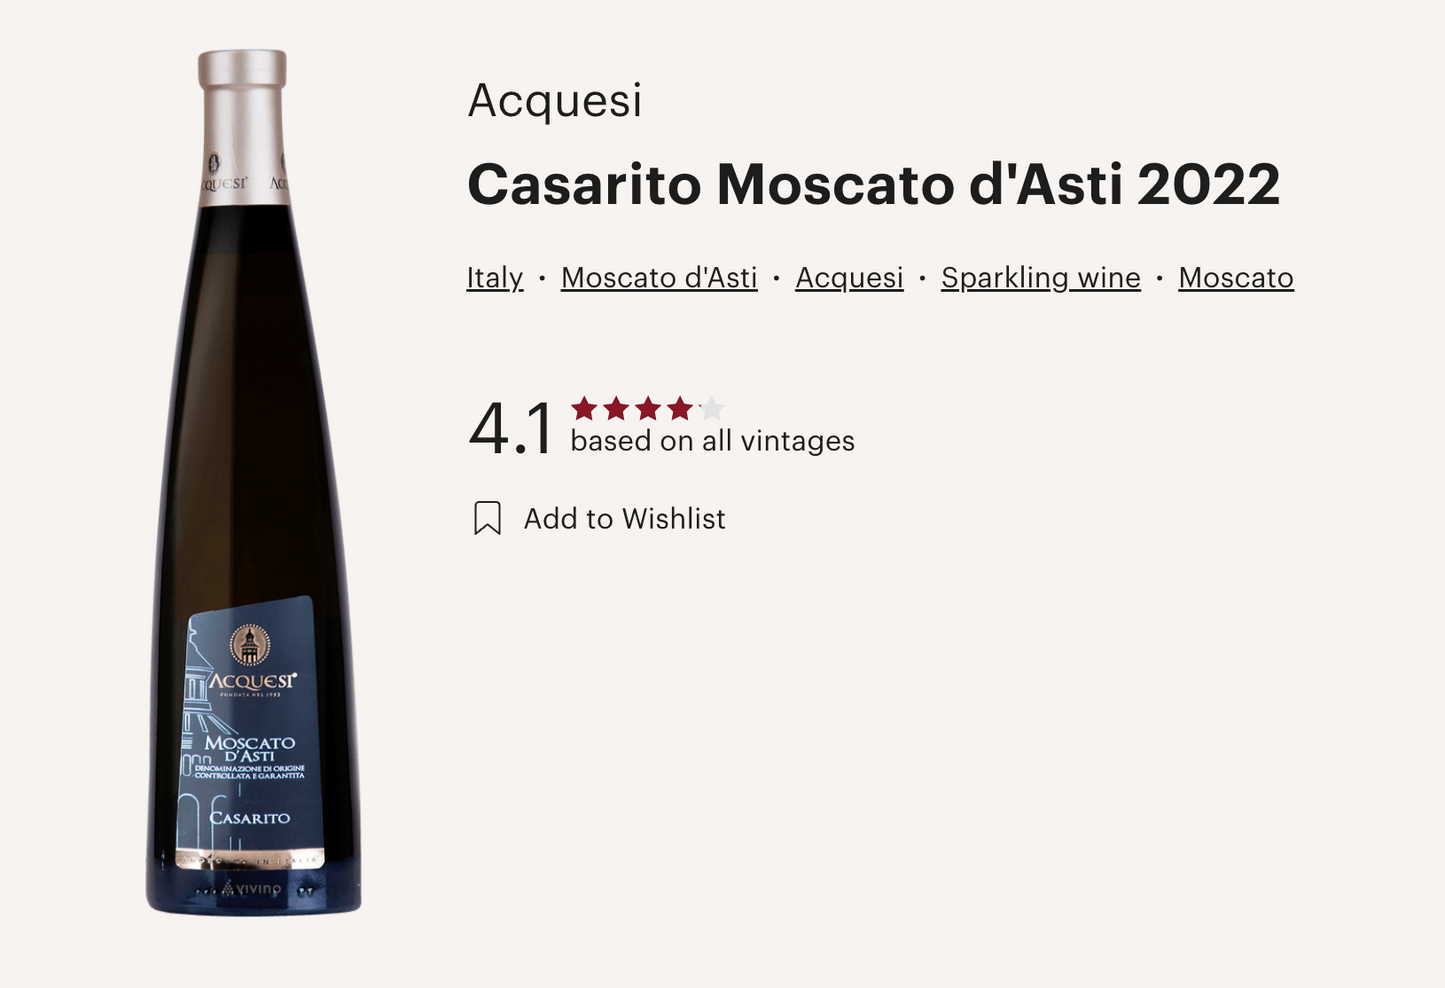 意大利 Acquesi Moscato D'Asti Casarito DOCG 2022 氣泡白酒